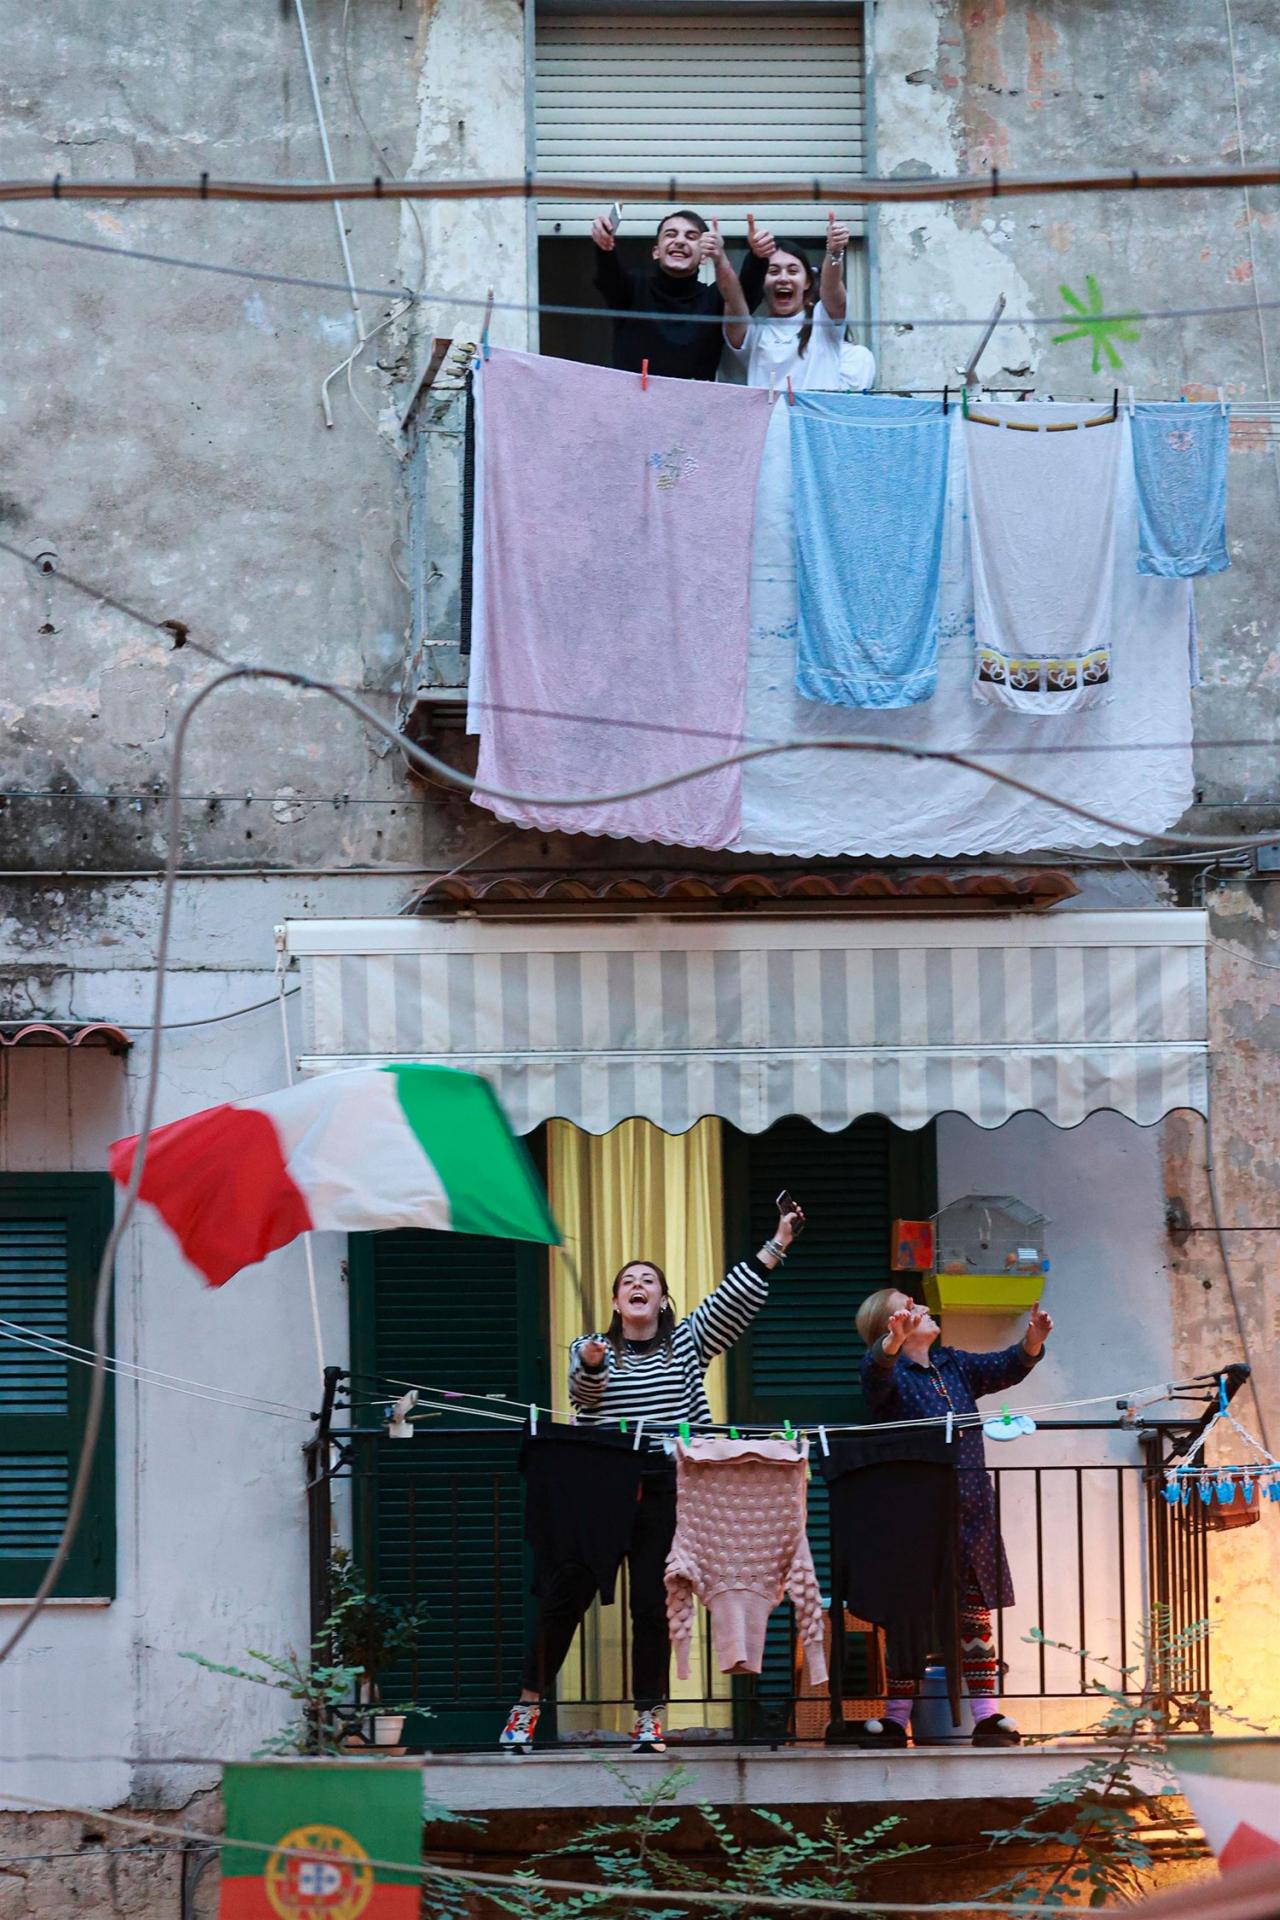 13. marec 2020 Neapol, Taliansko: Obyvatelia talianskych miest, ktorí sa ocitli v celoštátnej karanténe, vyšli na balkóny svojich domov a bytov, aby spoločne spievali známe piesne. Dodávali si tak odvahu a vzájomne sa povzbudzovali.